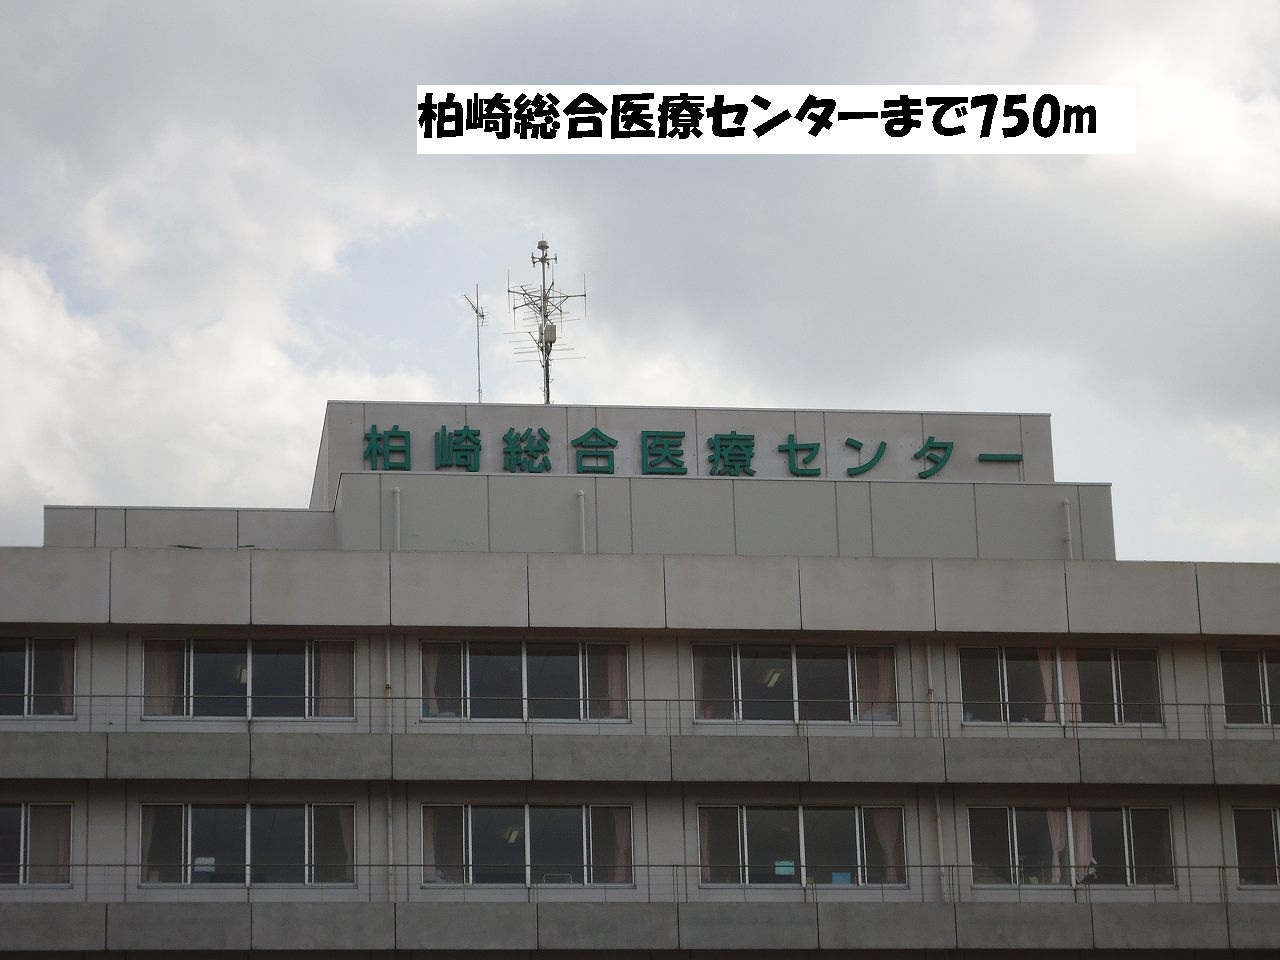 Hospital. Kashiwazaki General Medical Center until the (hospital) 750m